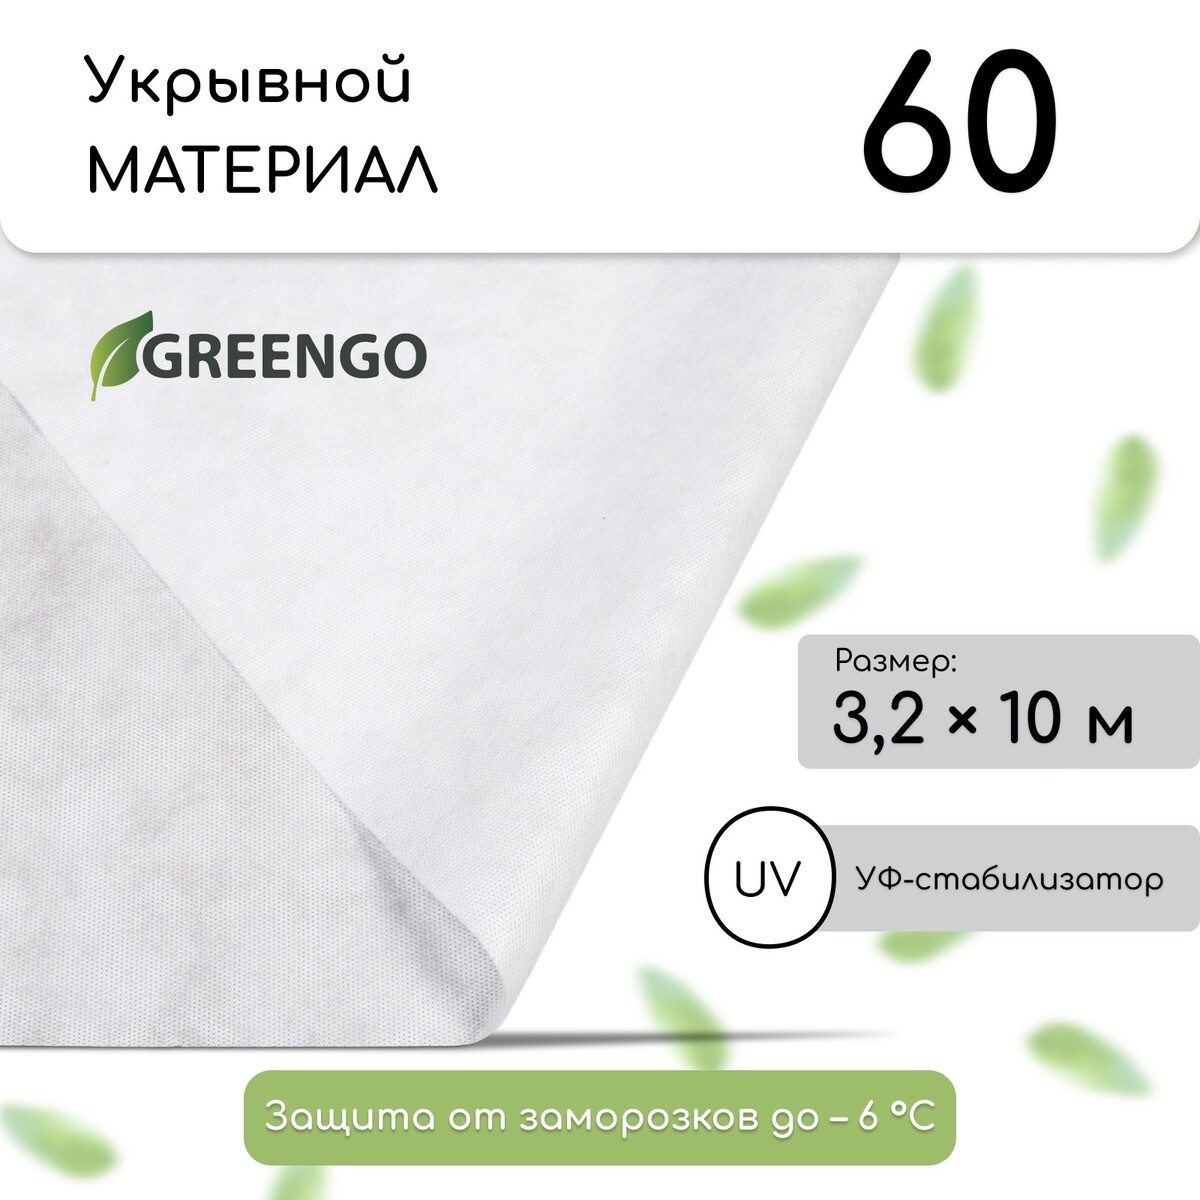 Материал укрывной, 10 × 3.2 м, плотность 60 г/м², спанбонд с уф-стабилизатором, белый, greengo, эконом 30%